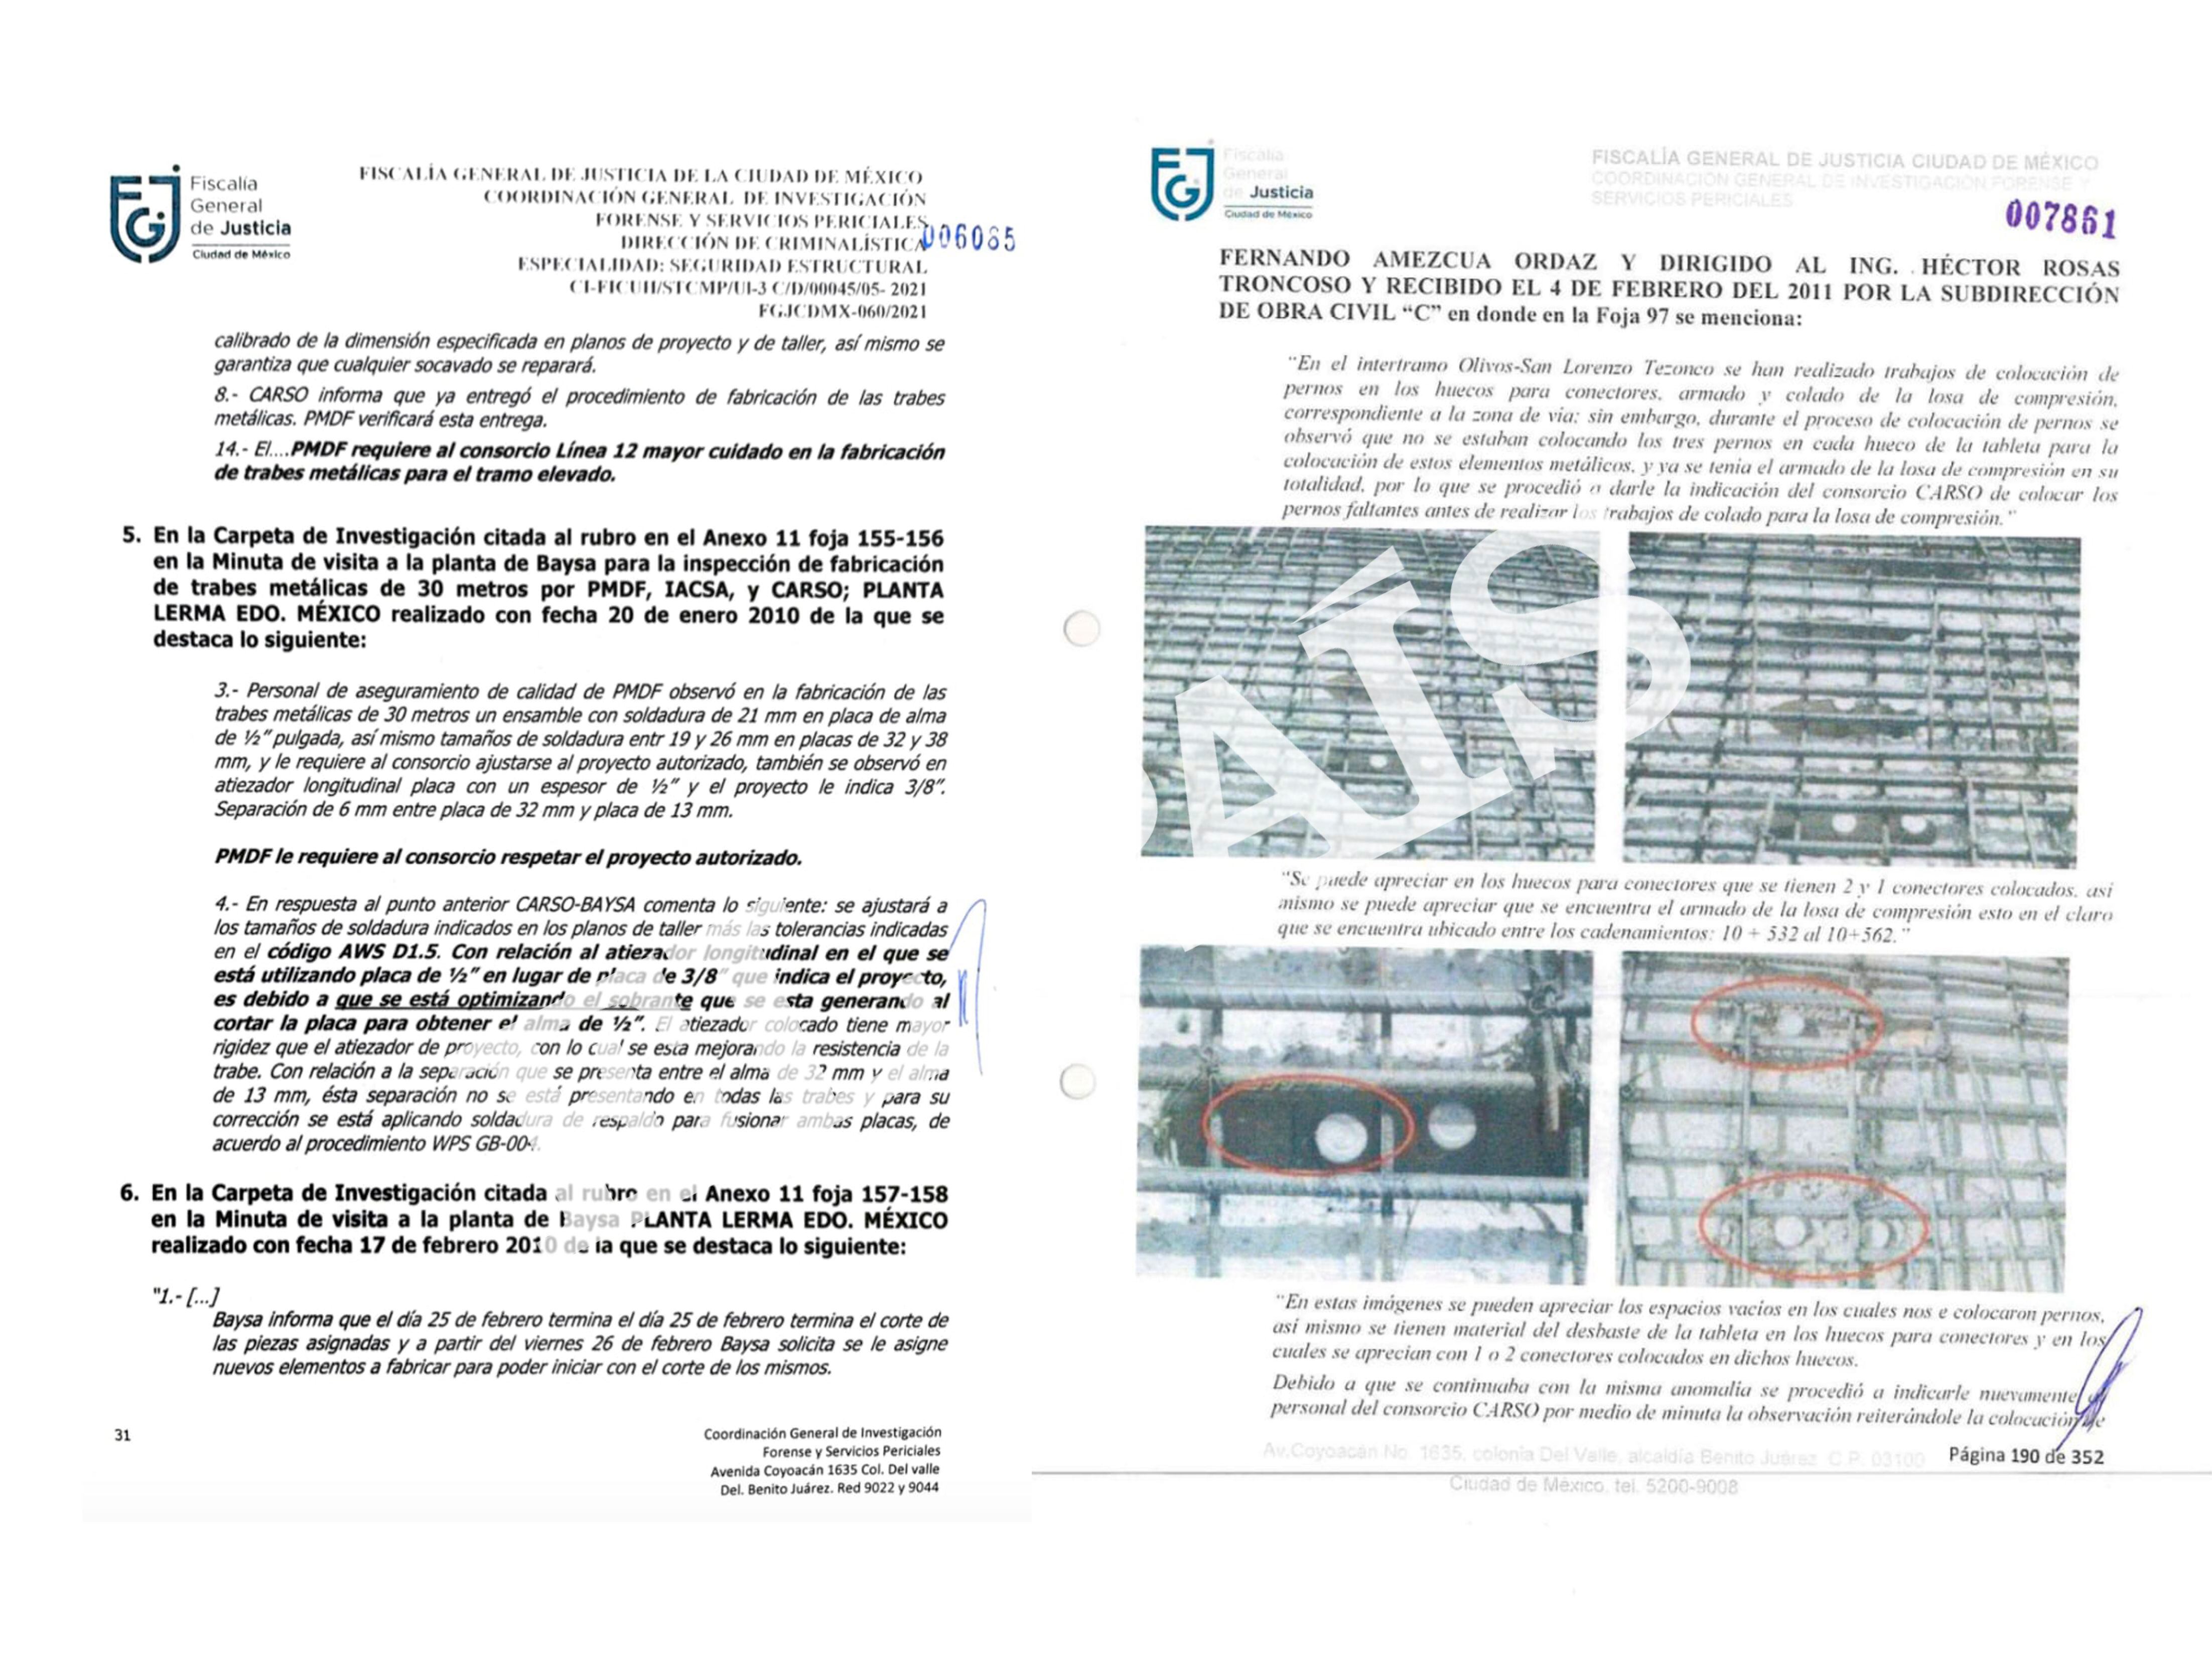 Copia de la carpeta de investigación de la Fiscalía de Ciudad de México sobre la Línea 12.